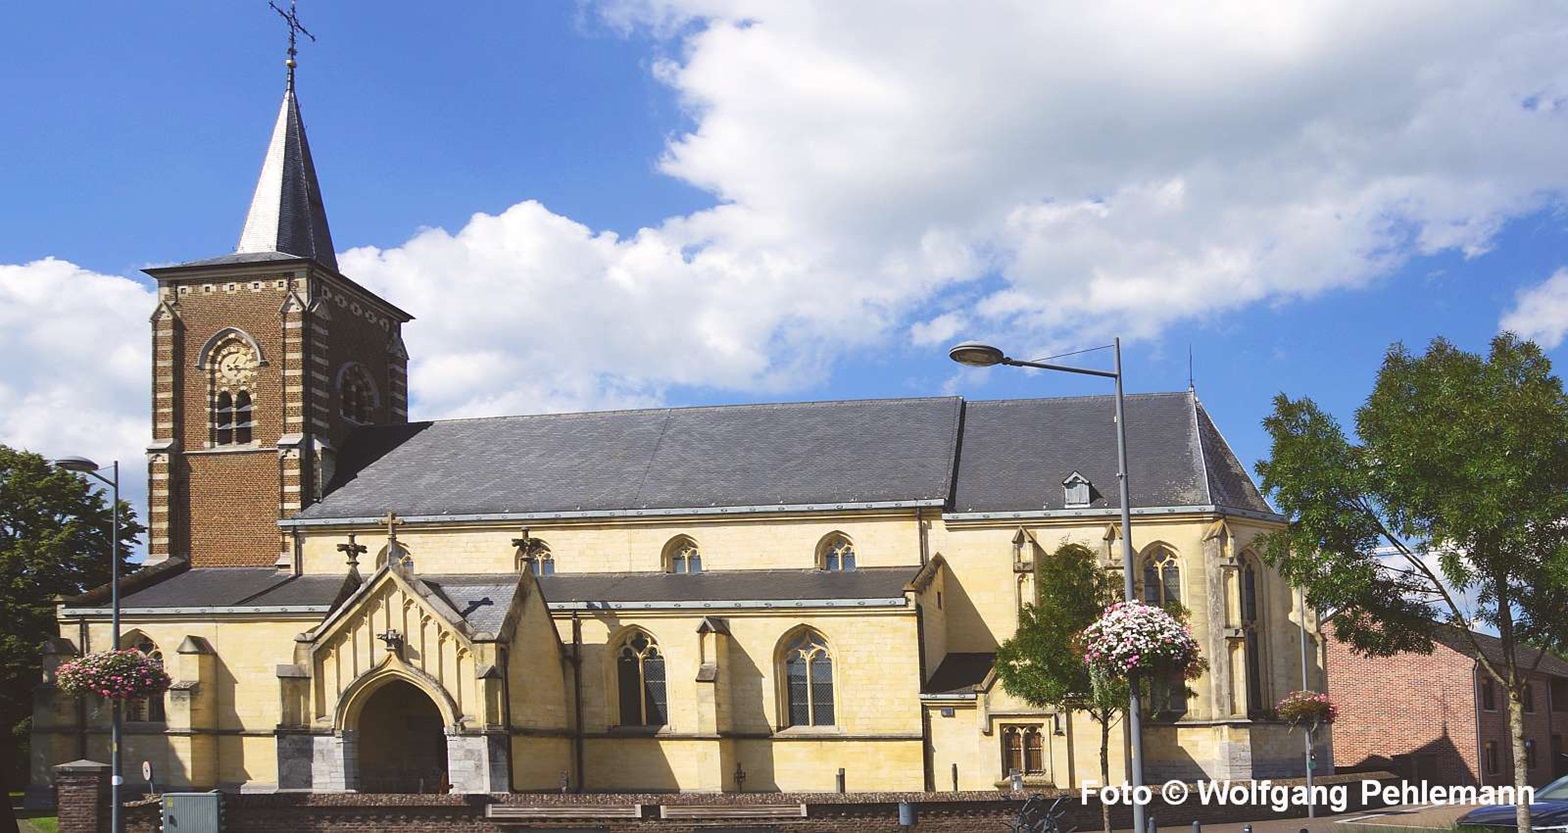 0014 B Kirche Sint-Trudo in Bree - 60 1600x850 - Foto © Wolfgang Pehlemann DSC09047